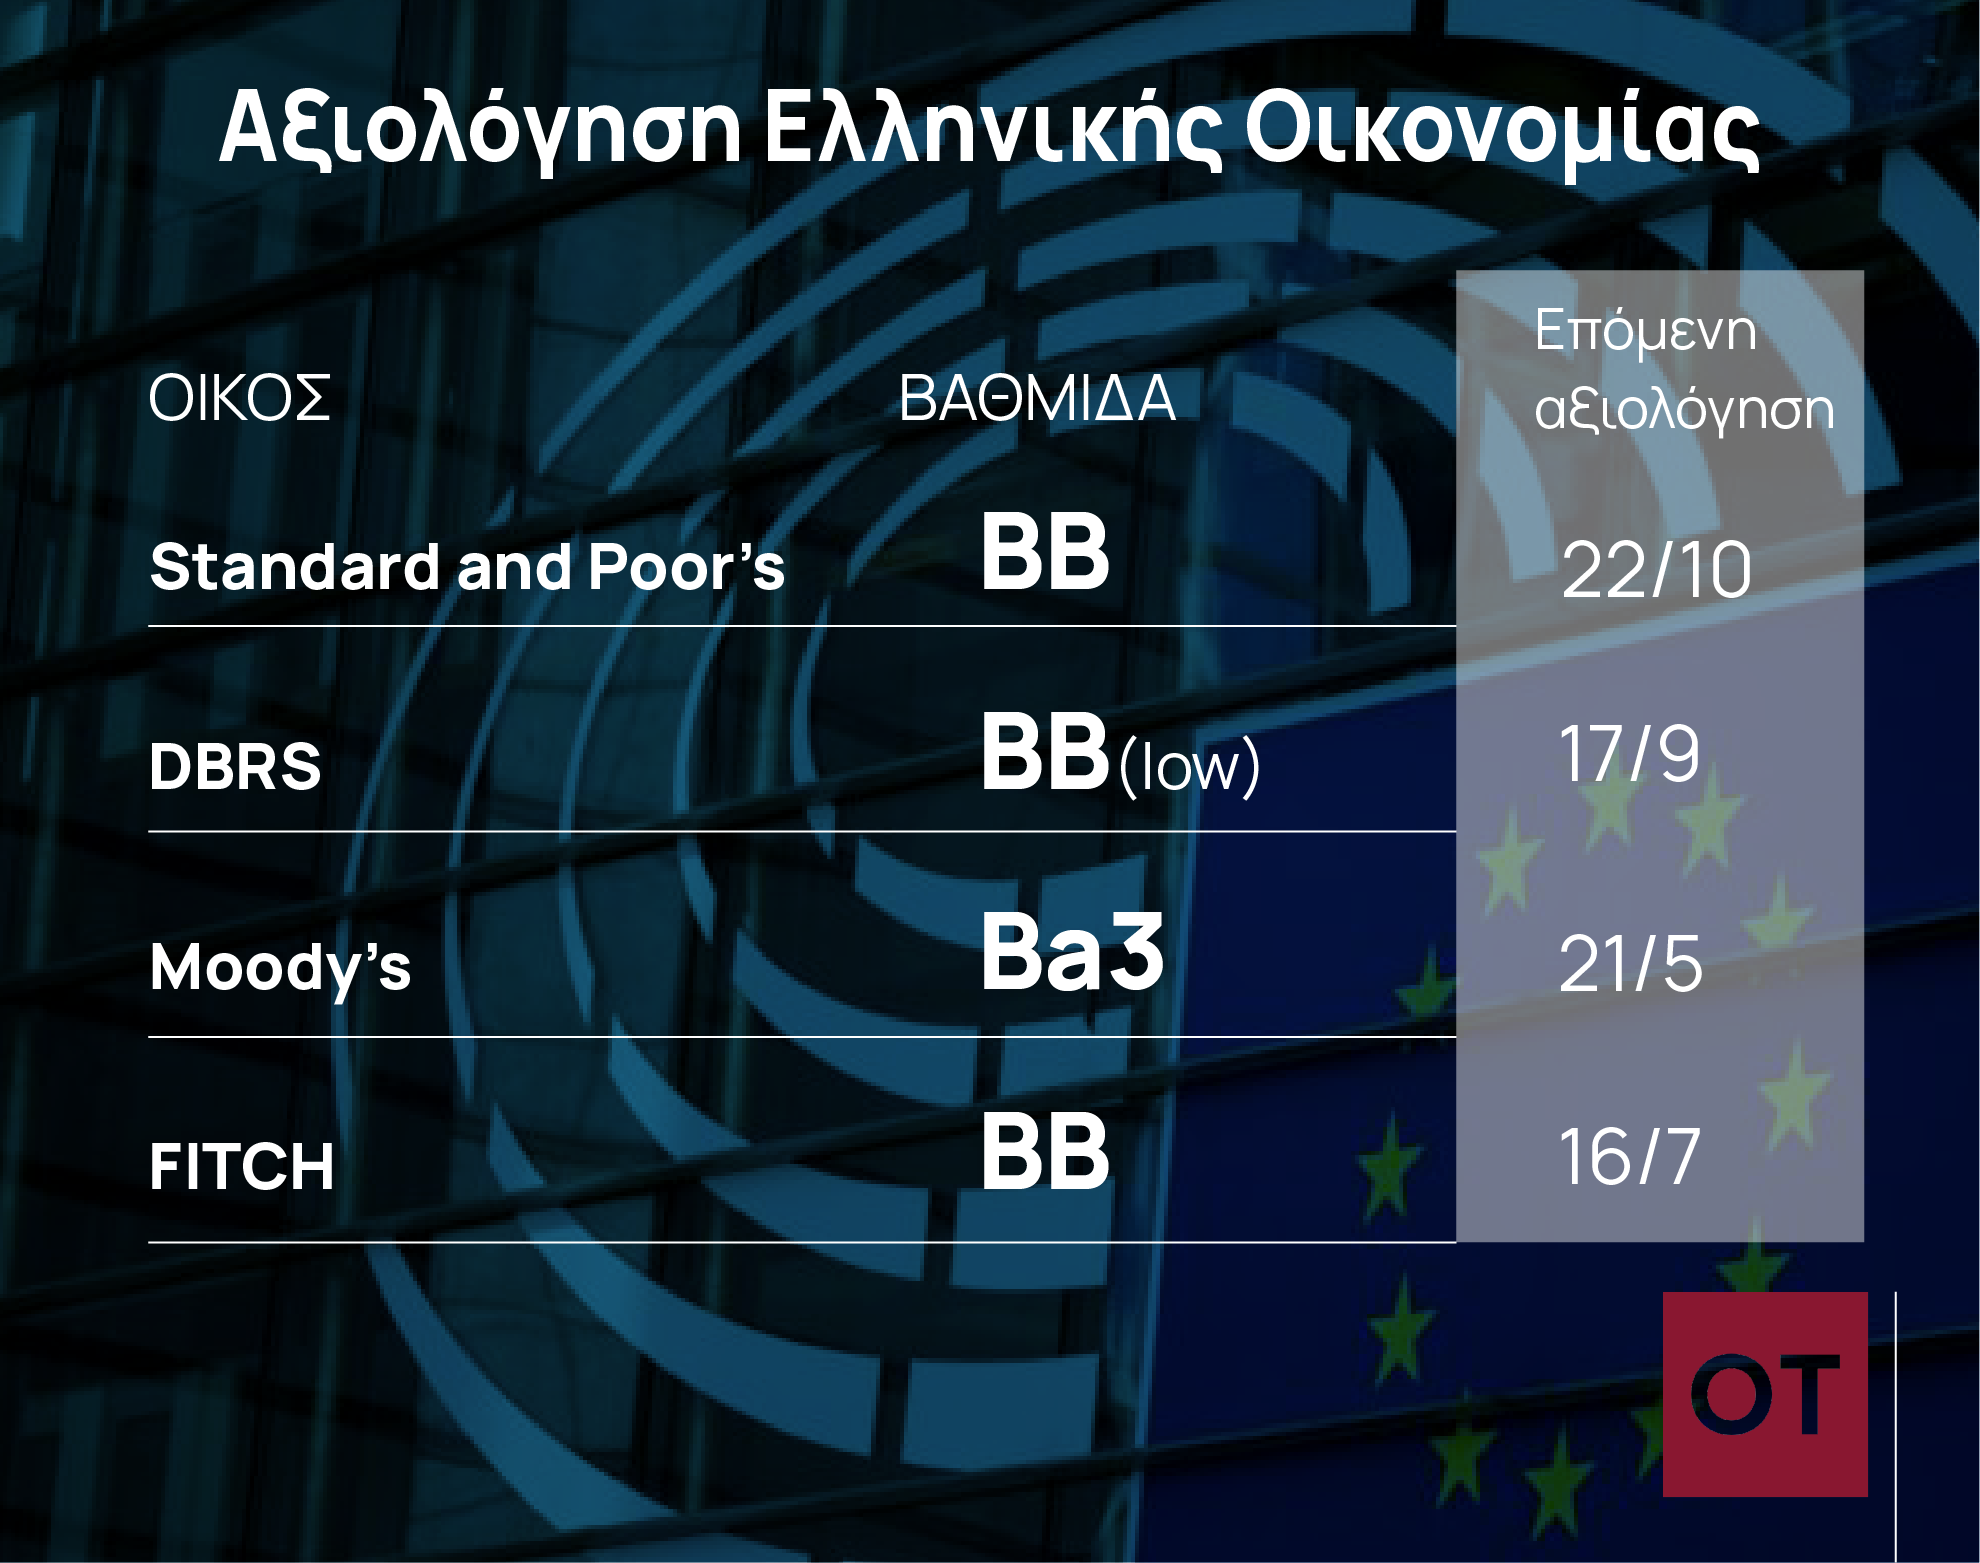 Η ελληνική οικονομία περιμένει να παίξει στην «Α’ Εθνική»